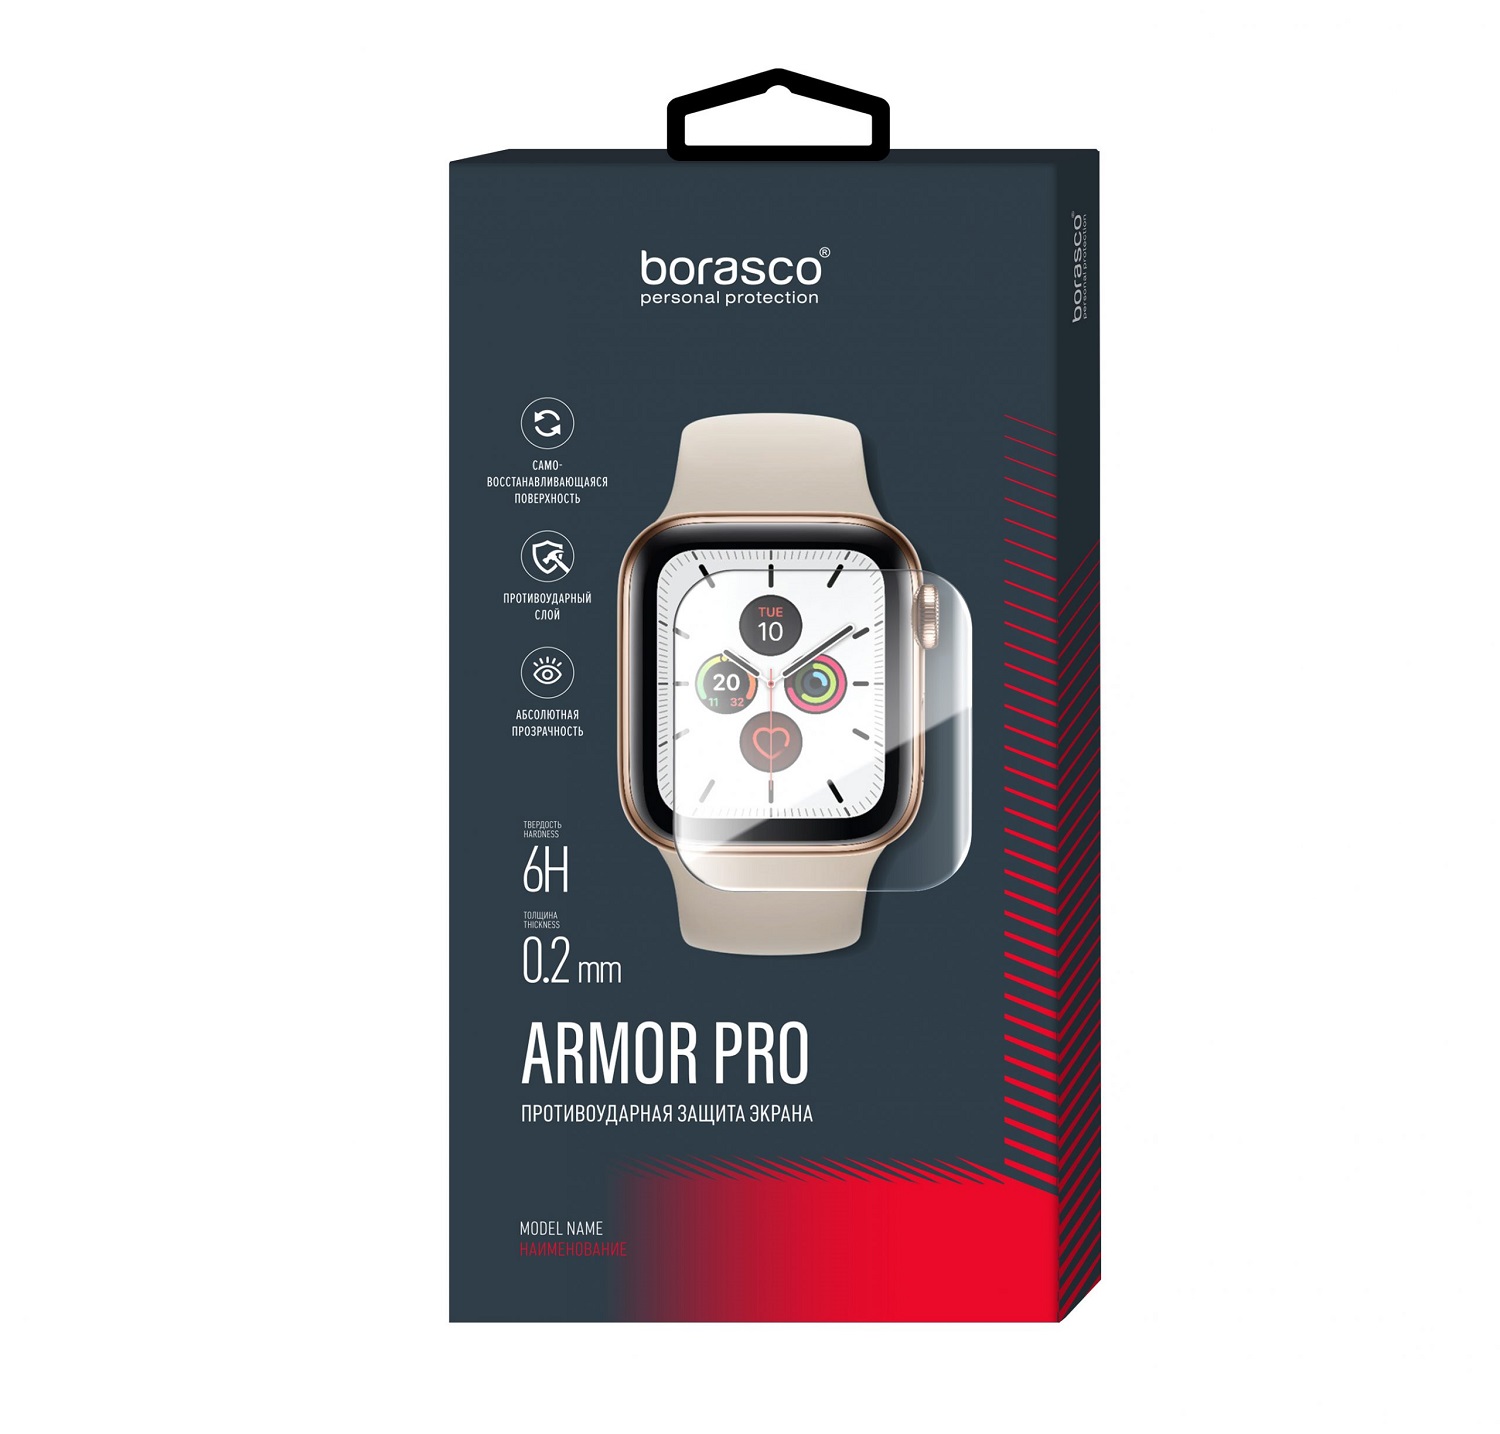 Защита экрана BoraSCO Armor Pro для Xiaomi Mi Watch защита экрана borasco armor pro для amazfit bip